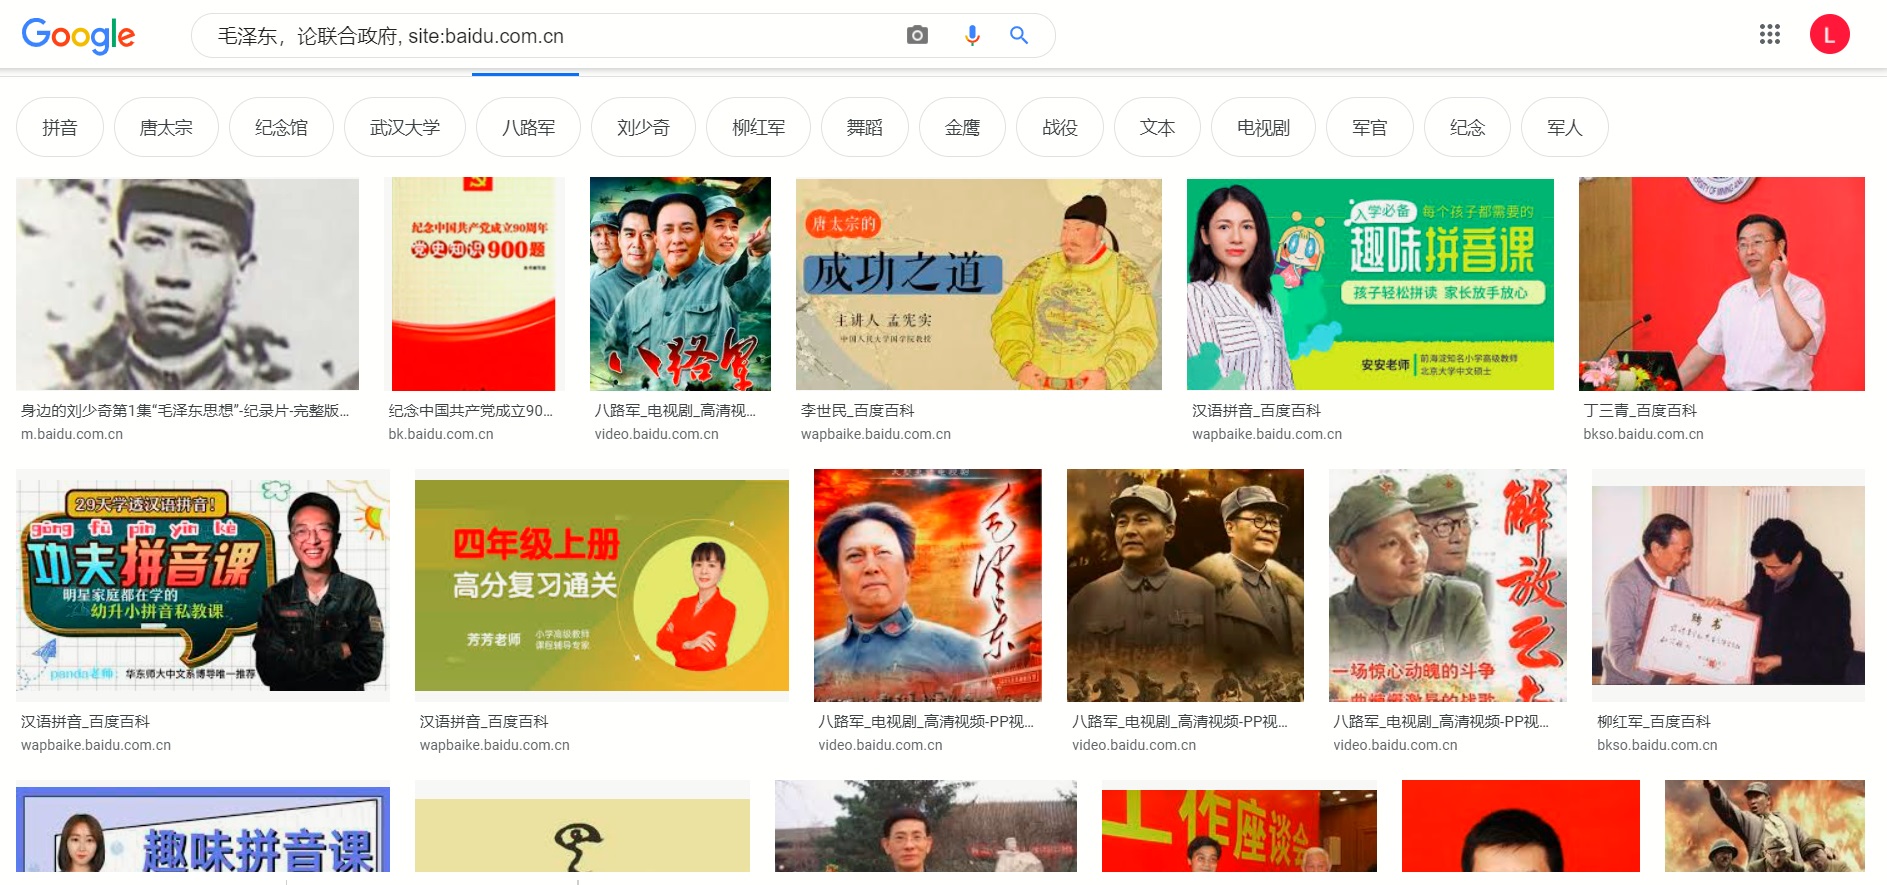 google-baidu-cn.jpg